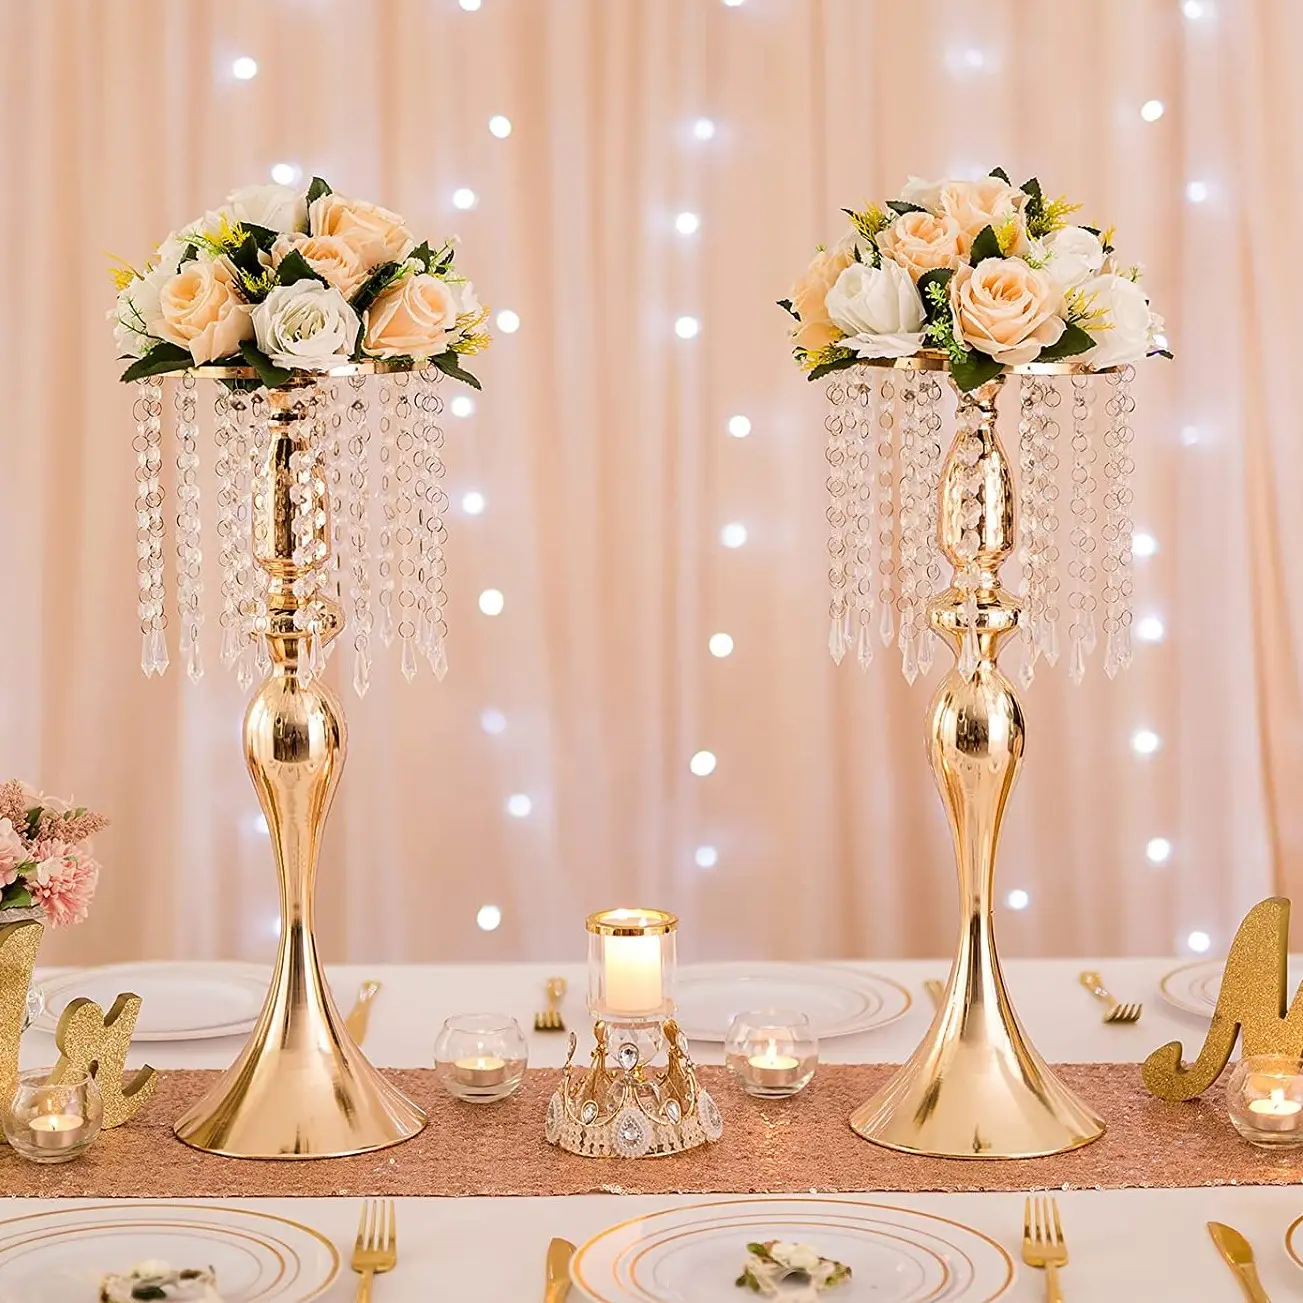 الجملة الزفاف الجدول زهرة قطعة مركزية من الكريستال السائبة الذهب زهور معدنية الطابق الوقوف غرفة المعيشة